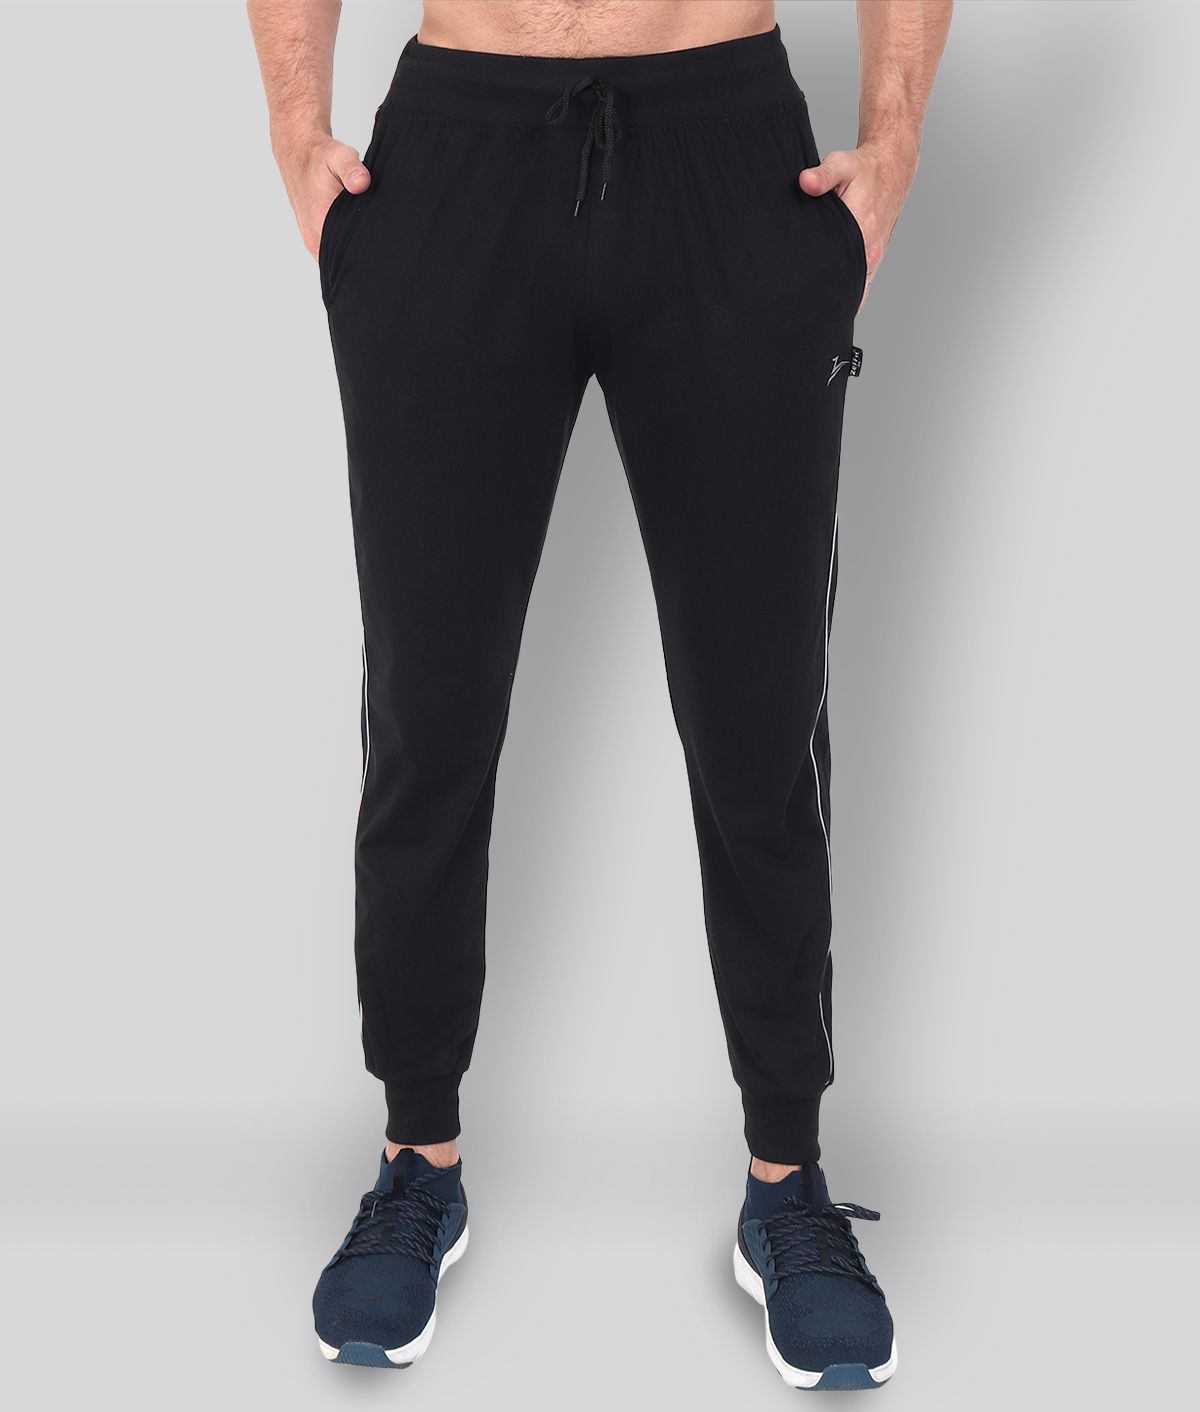 Zeffit - Black Cotton Blend Men's Trackpants ( Pack of 1 )